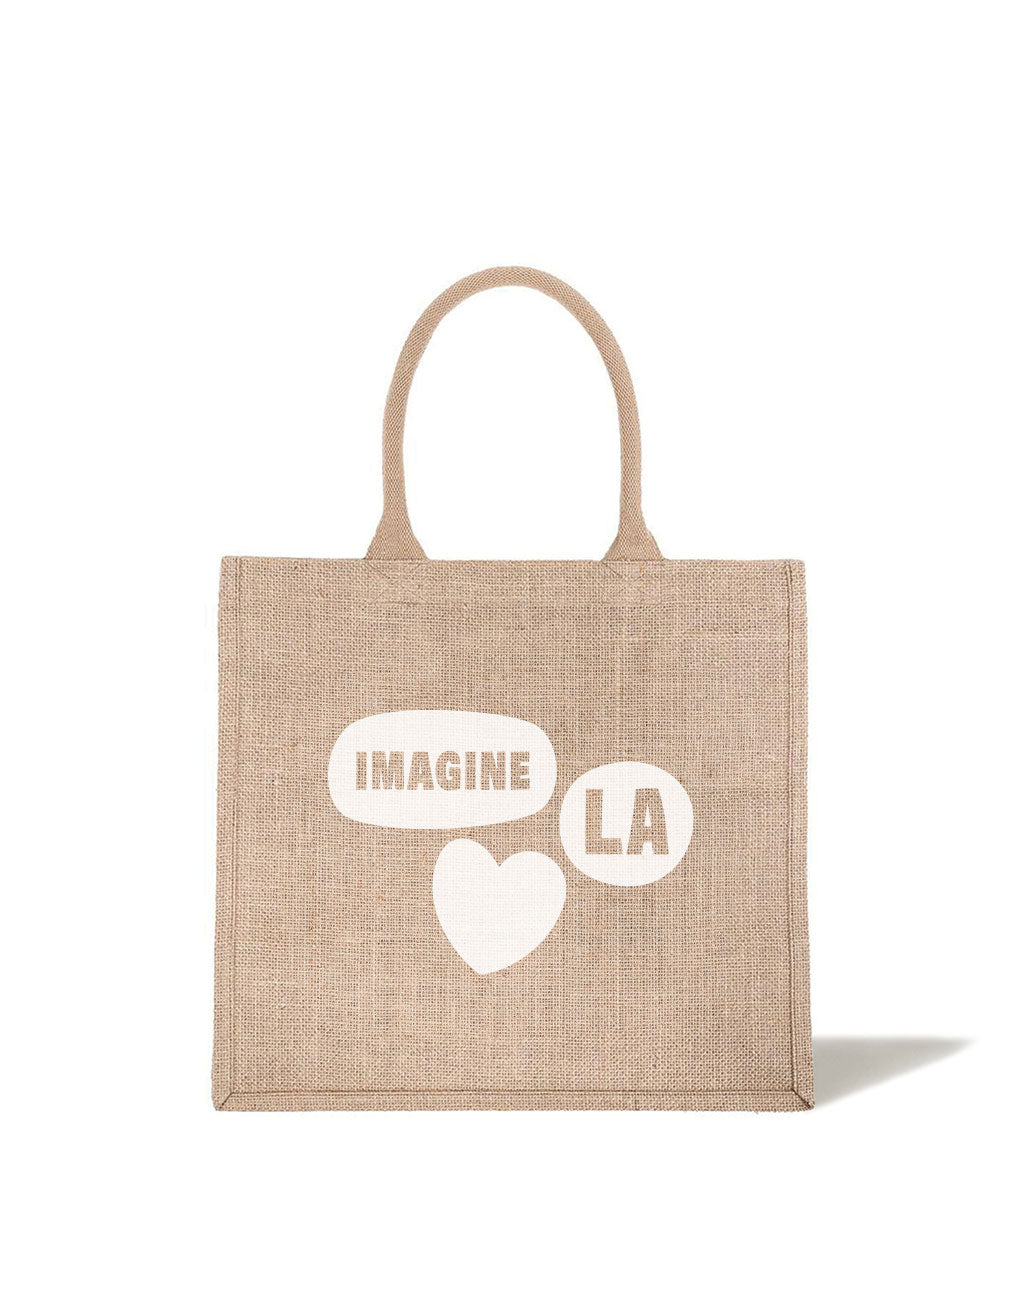 Shopping Tote - Imagine LA